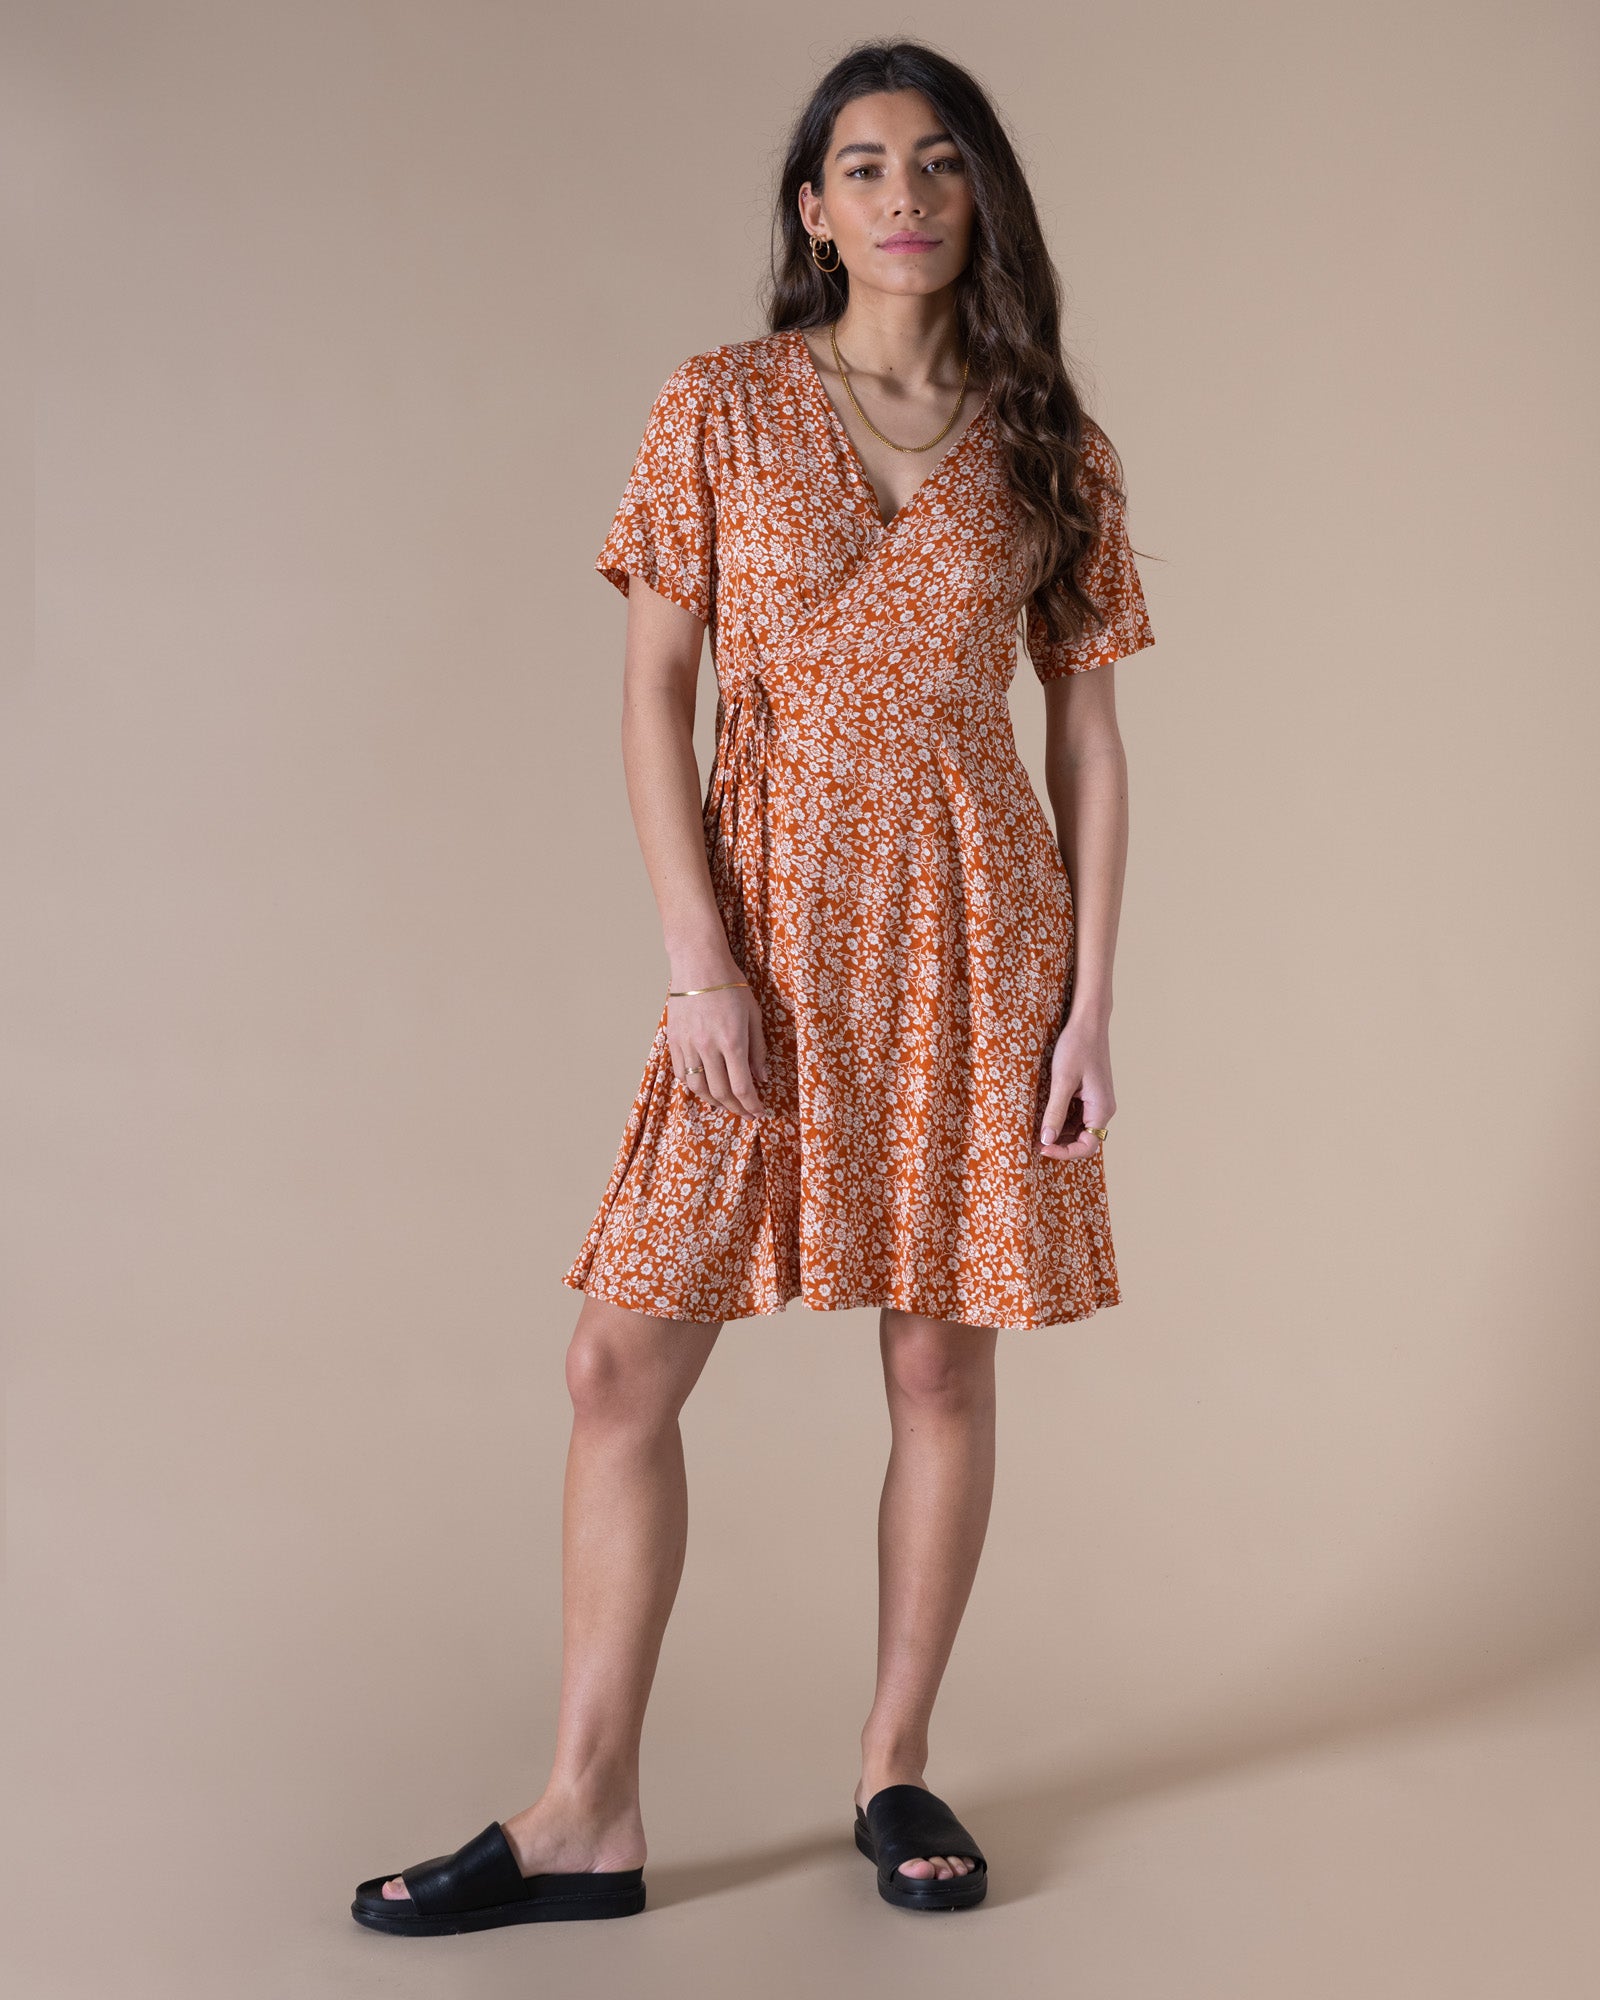 TILTIL Fabienne Orange Print Dress ...